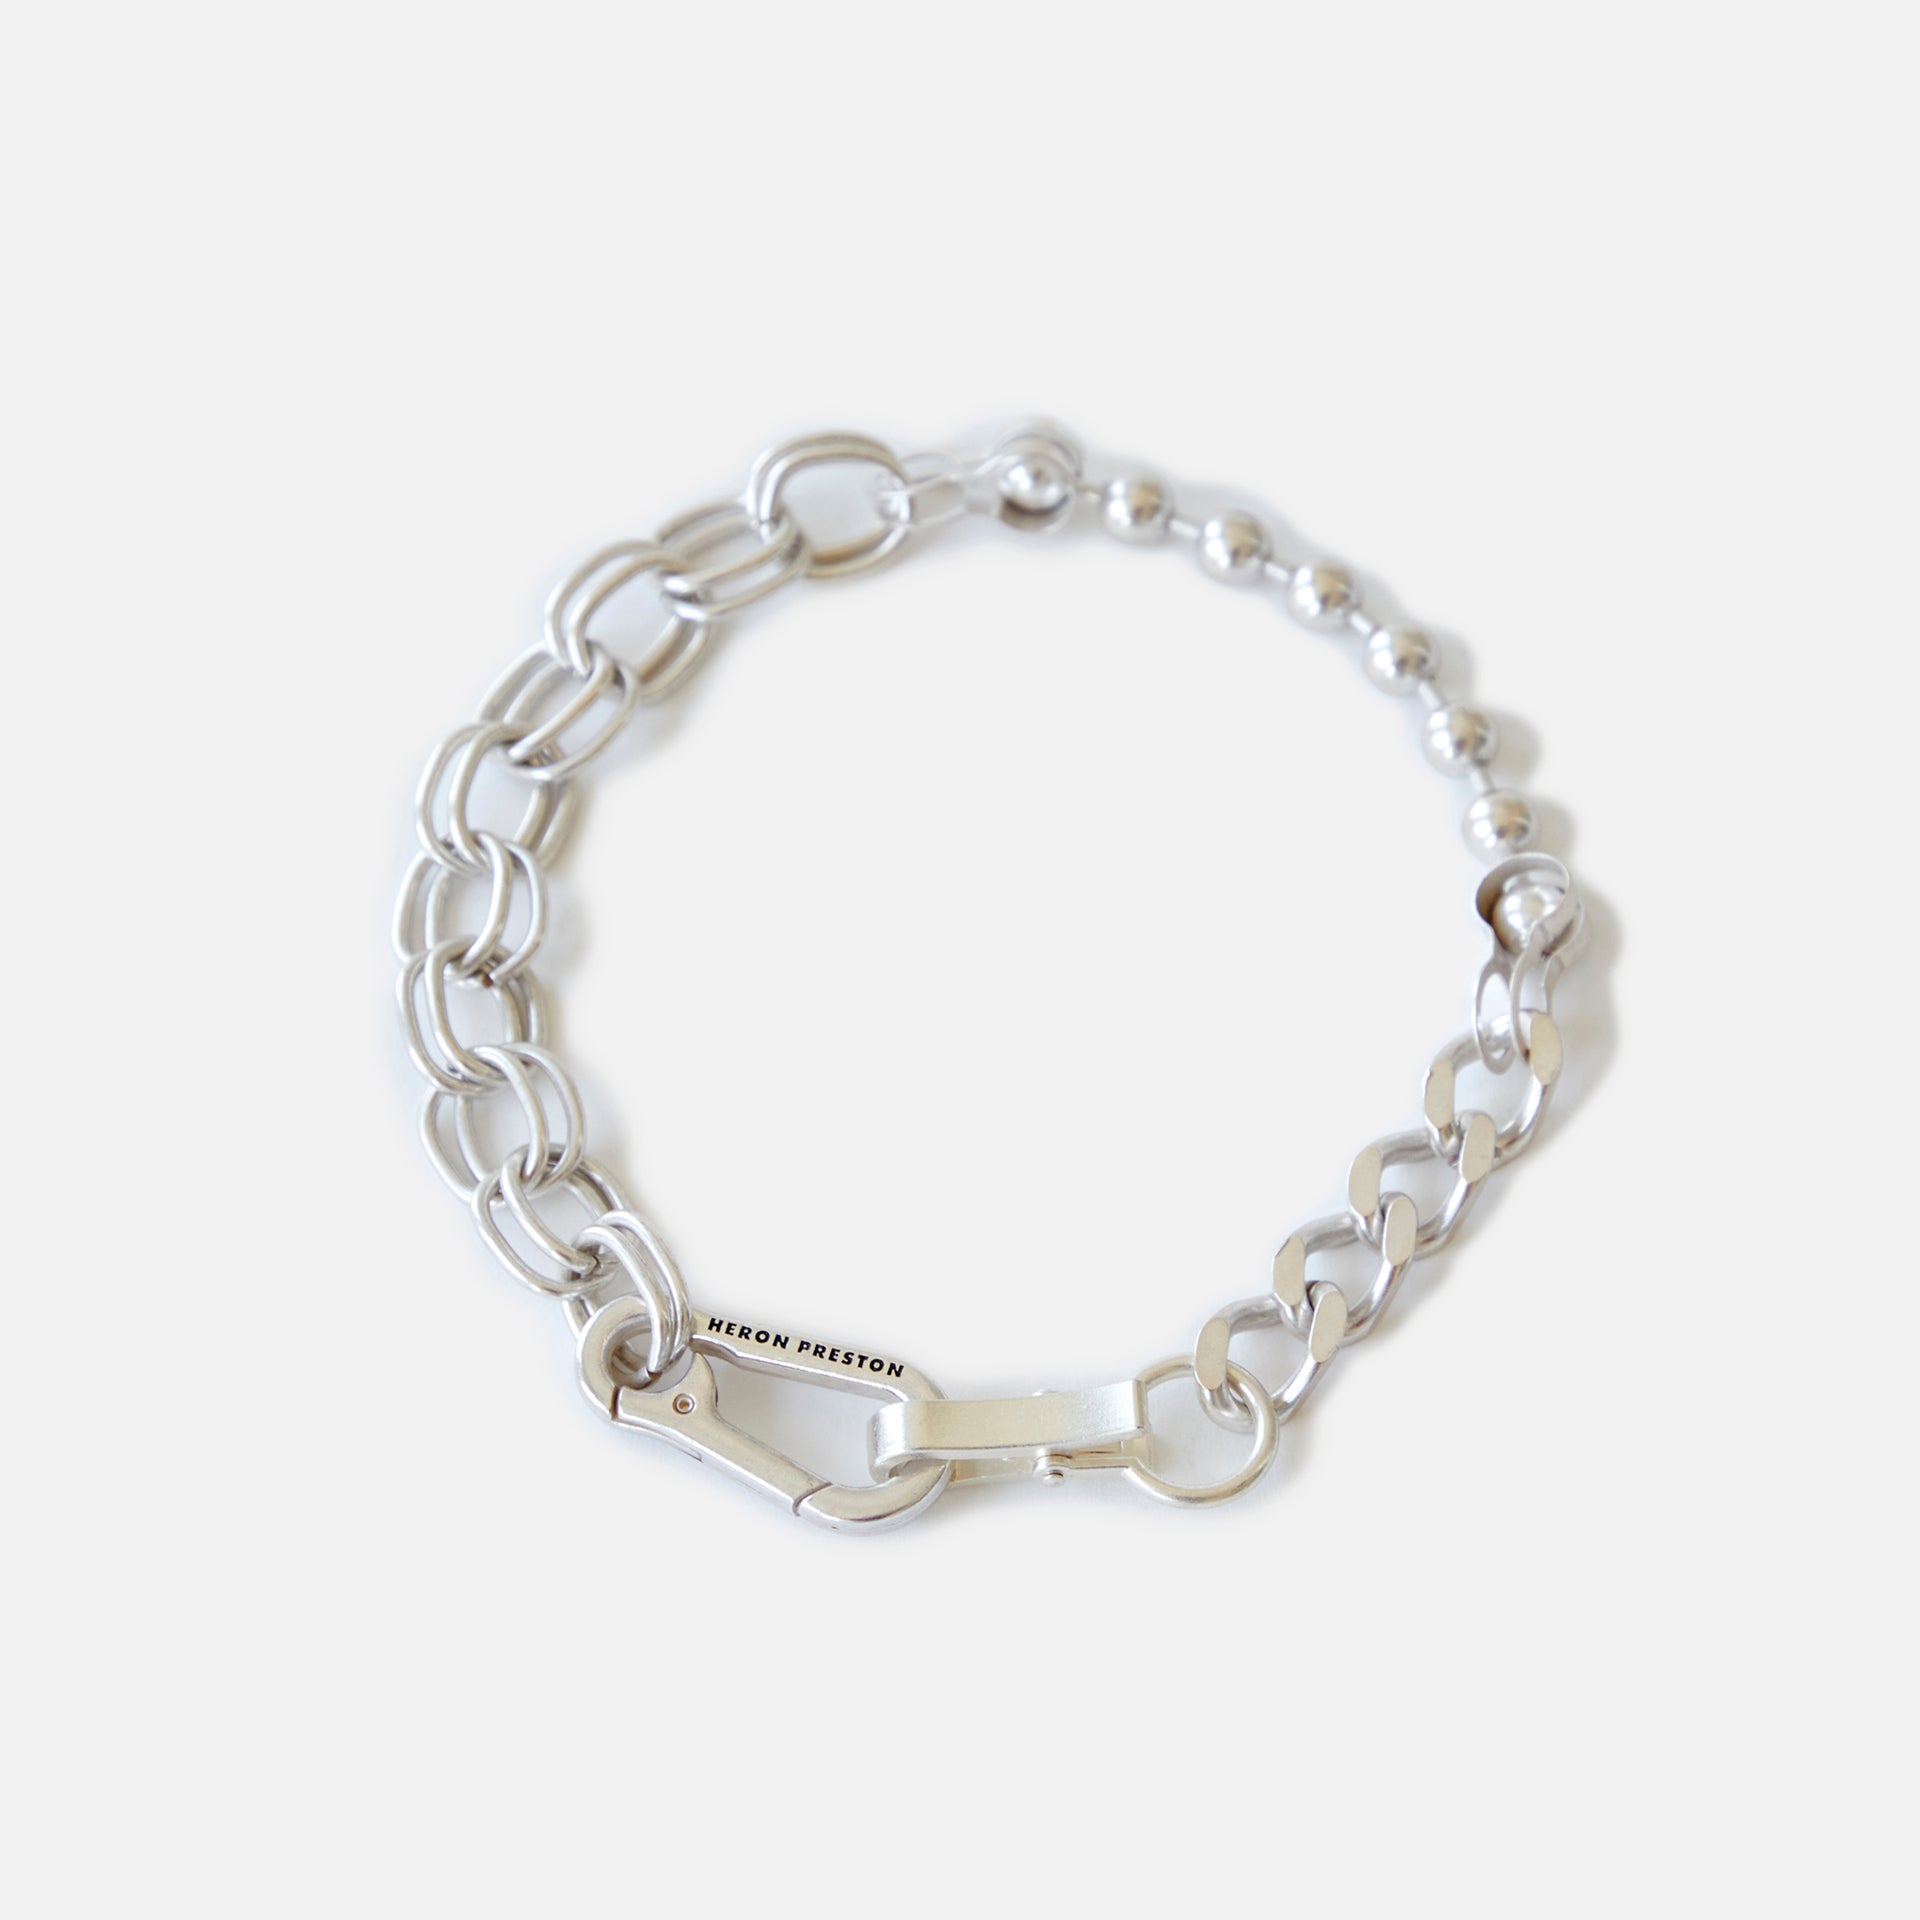 Heron Preston Multichain Necklace - Silver